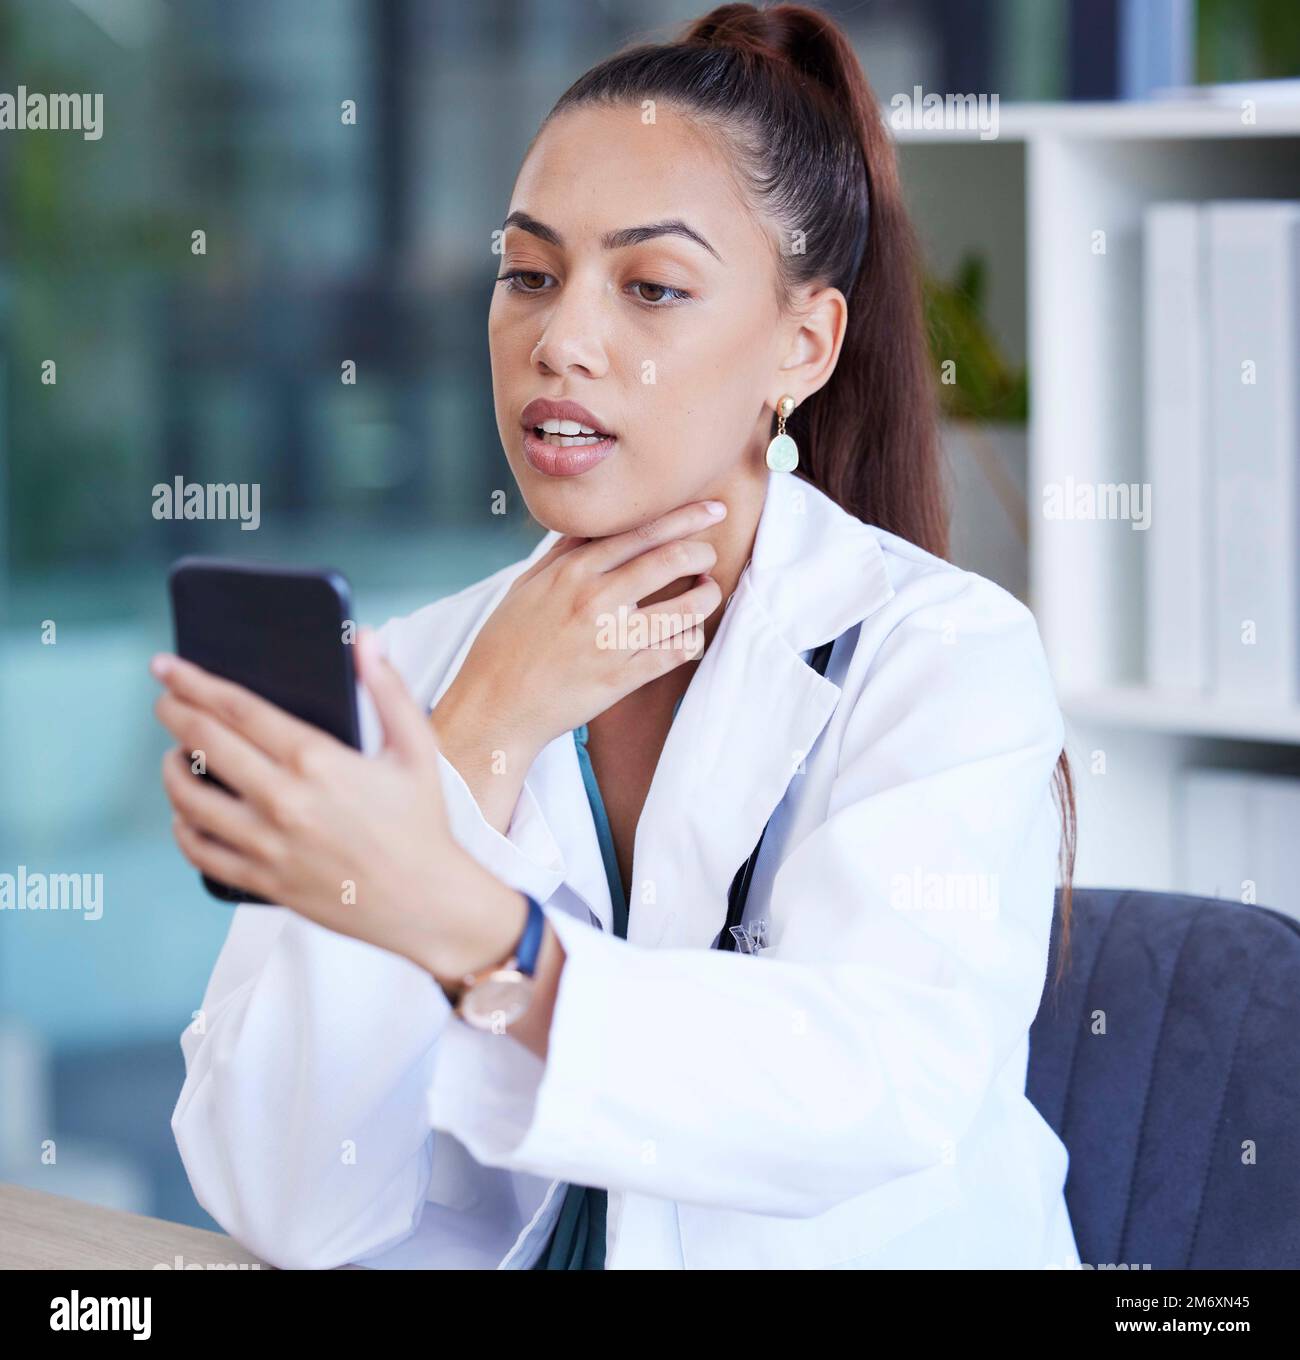 Téléphone, appel vidéo et médecin effectuant une consultation en ligne pour les soins de santé dans son bureau à l'hôpital. Communication, technologie et médecine féminine Banque D'Images